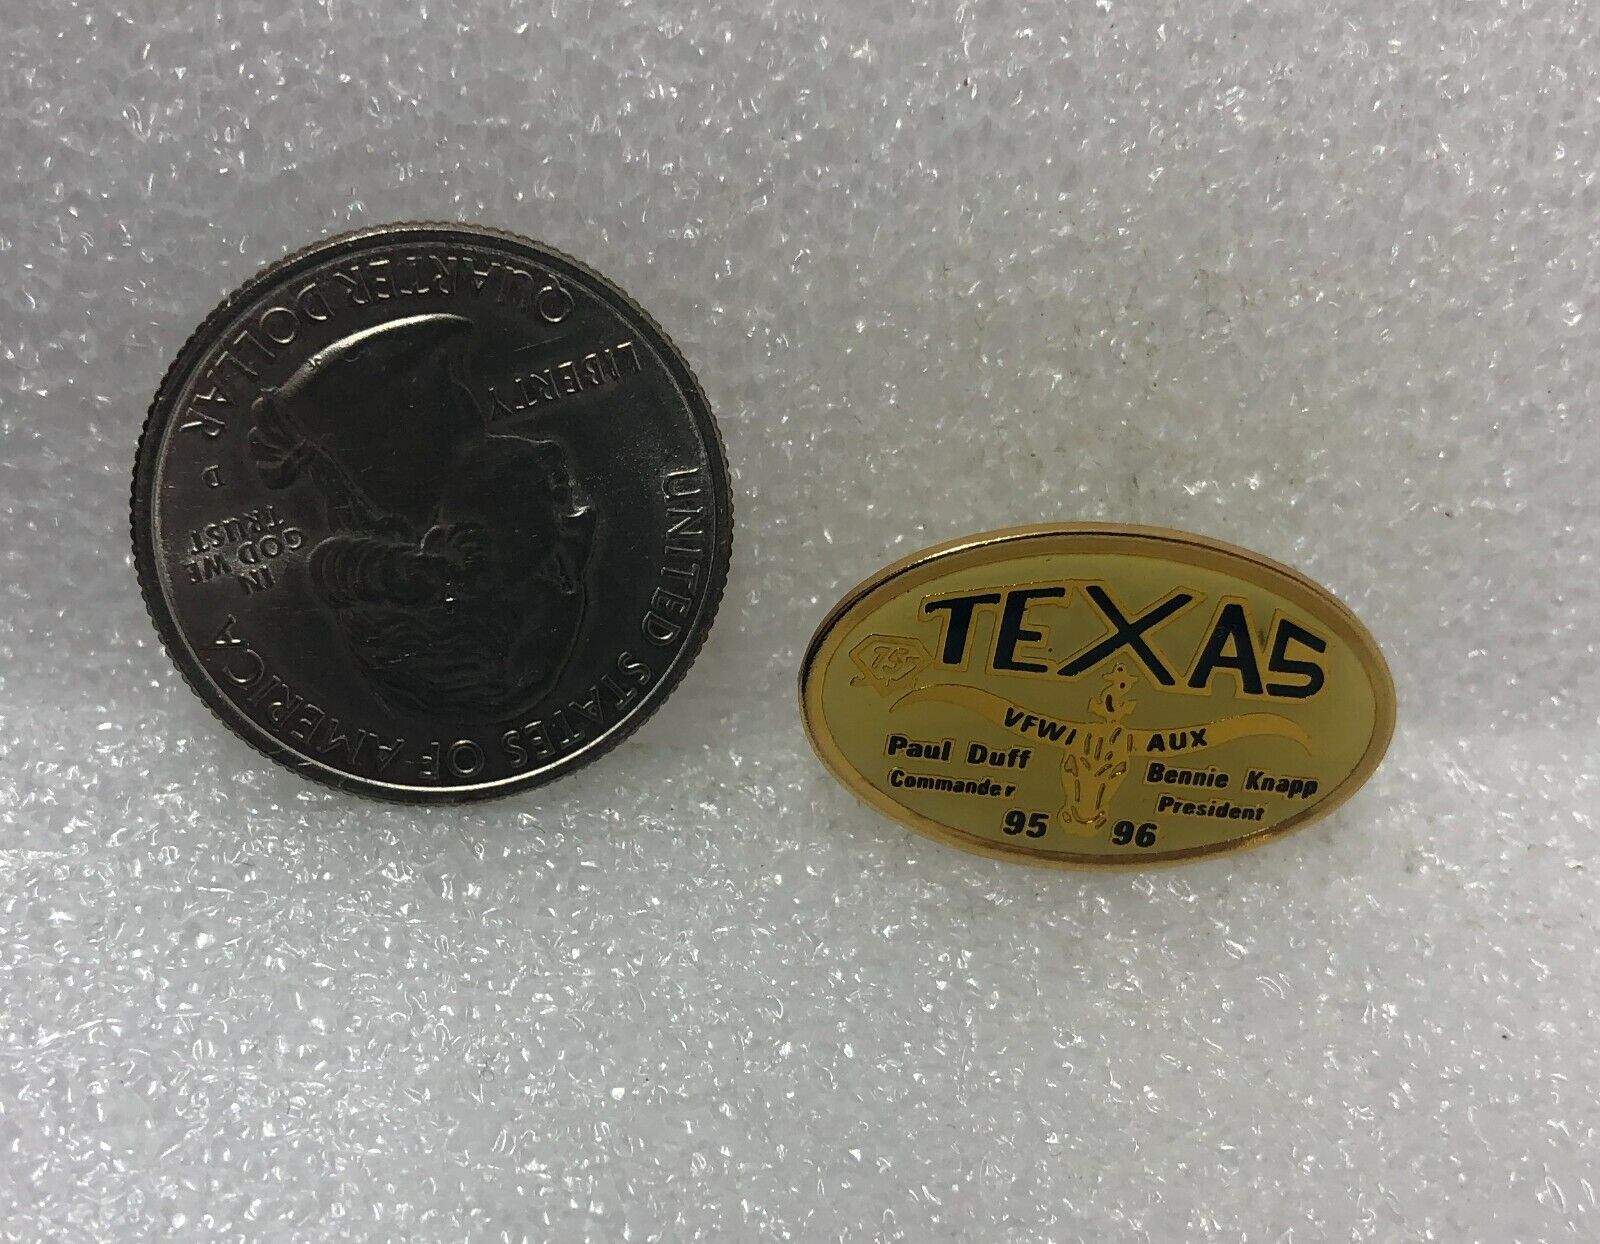 1995-96 VFW Aux Texas Paul Duff Bennie Knapp Pin